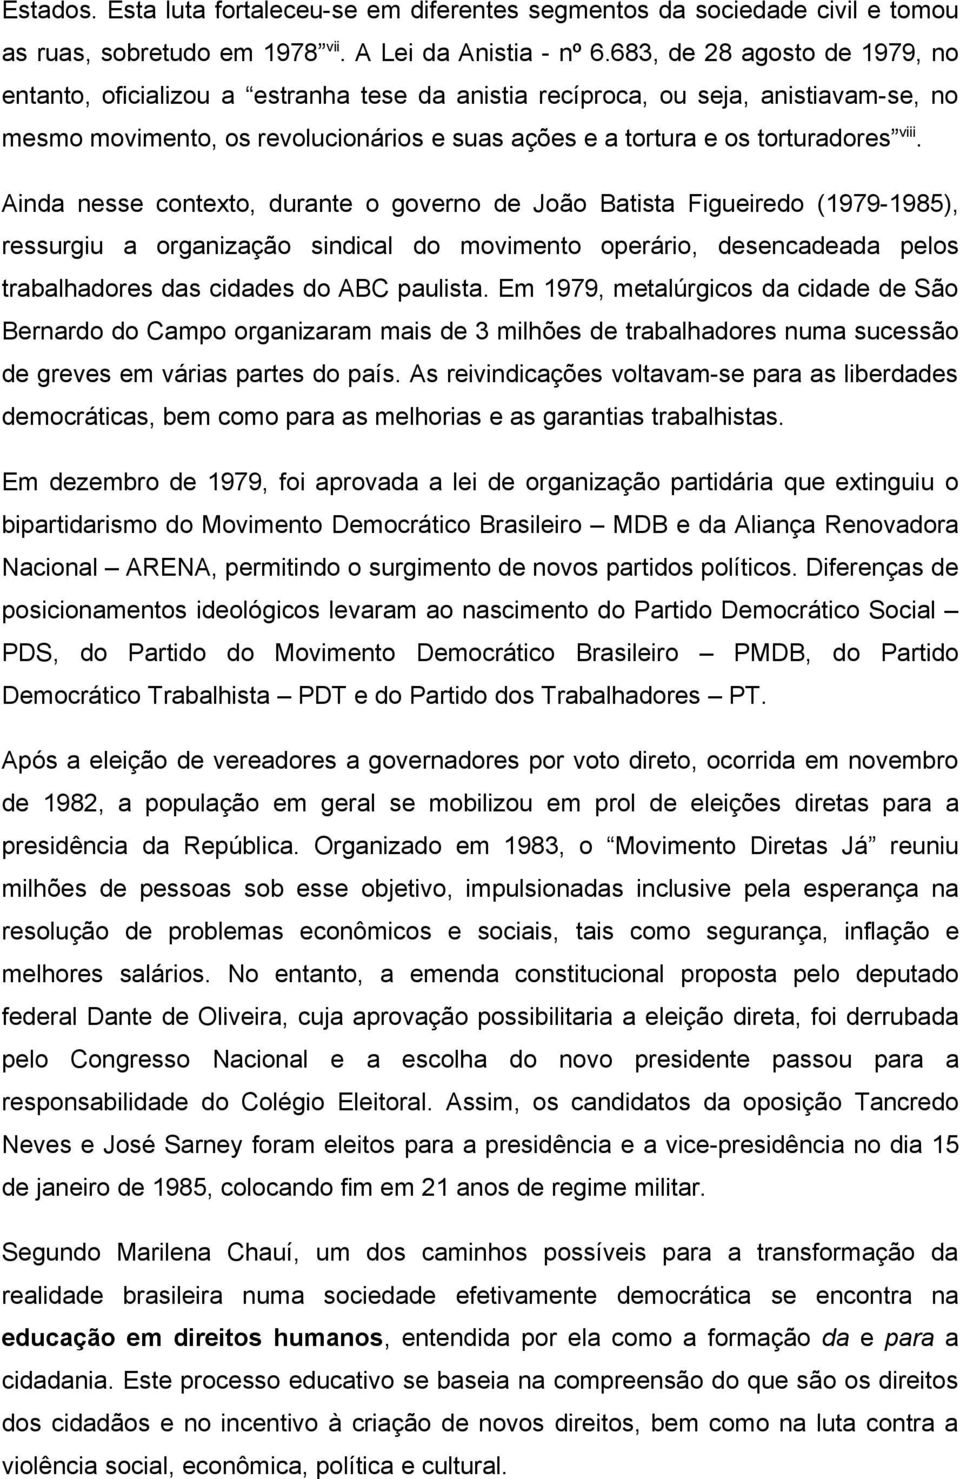 Ainda nesse contexto, durante o governo de João Batista Figueiredo (1979-1985), ressurgiu a organização sindical do movimento operário, desencadeada pelos trabalhadores das cidades do ABC paulista.